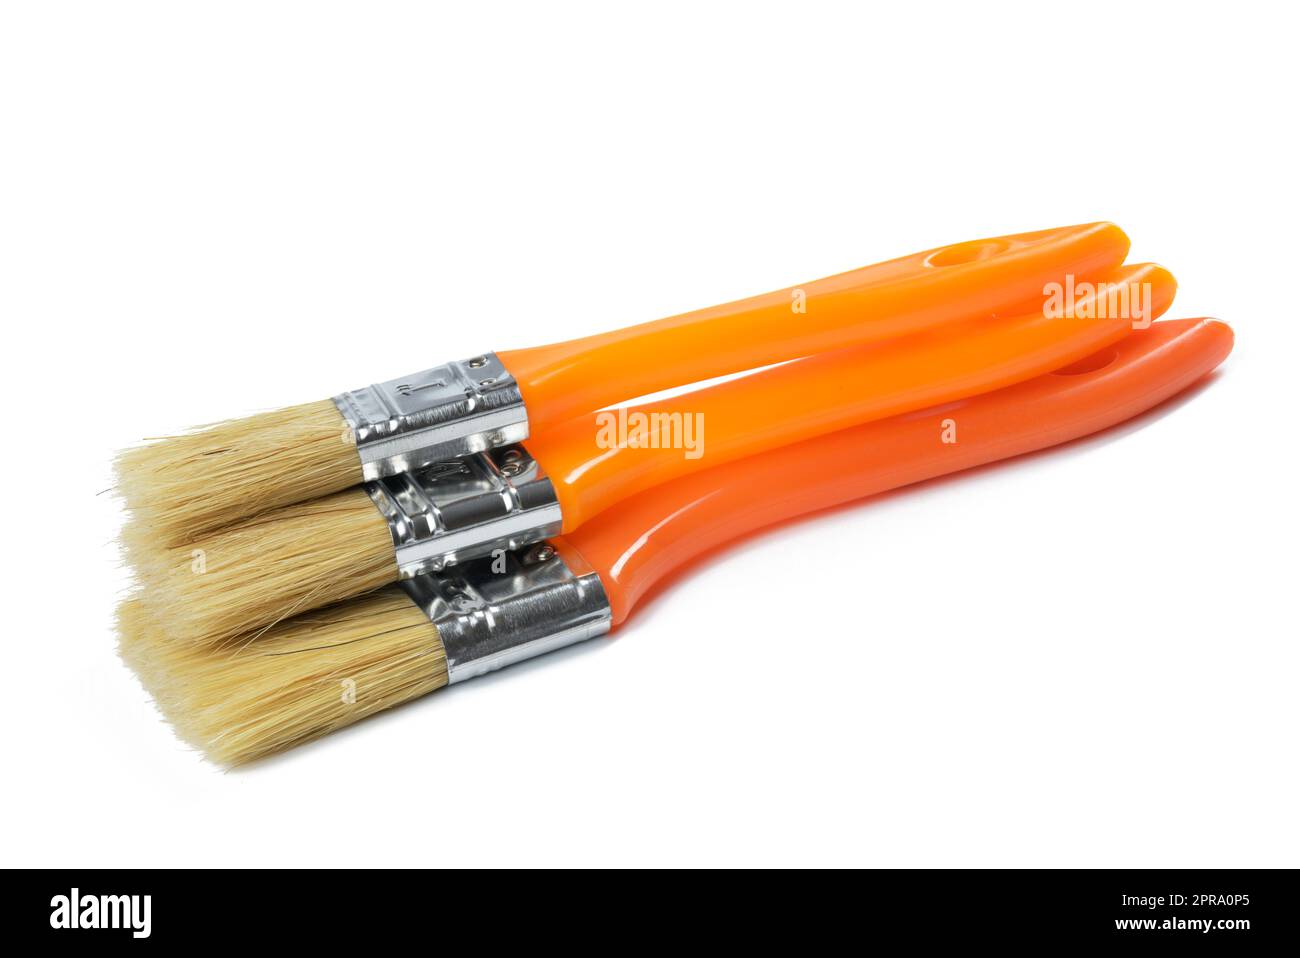 New paint brush with orange handle isolated on white background Stock Photo